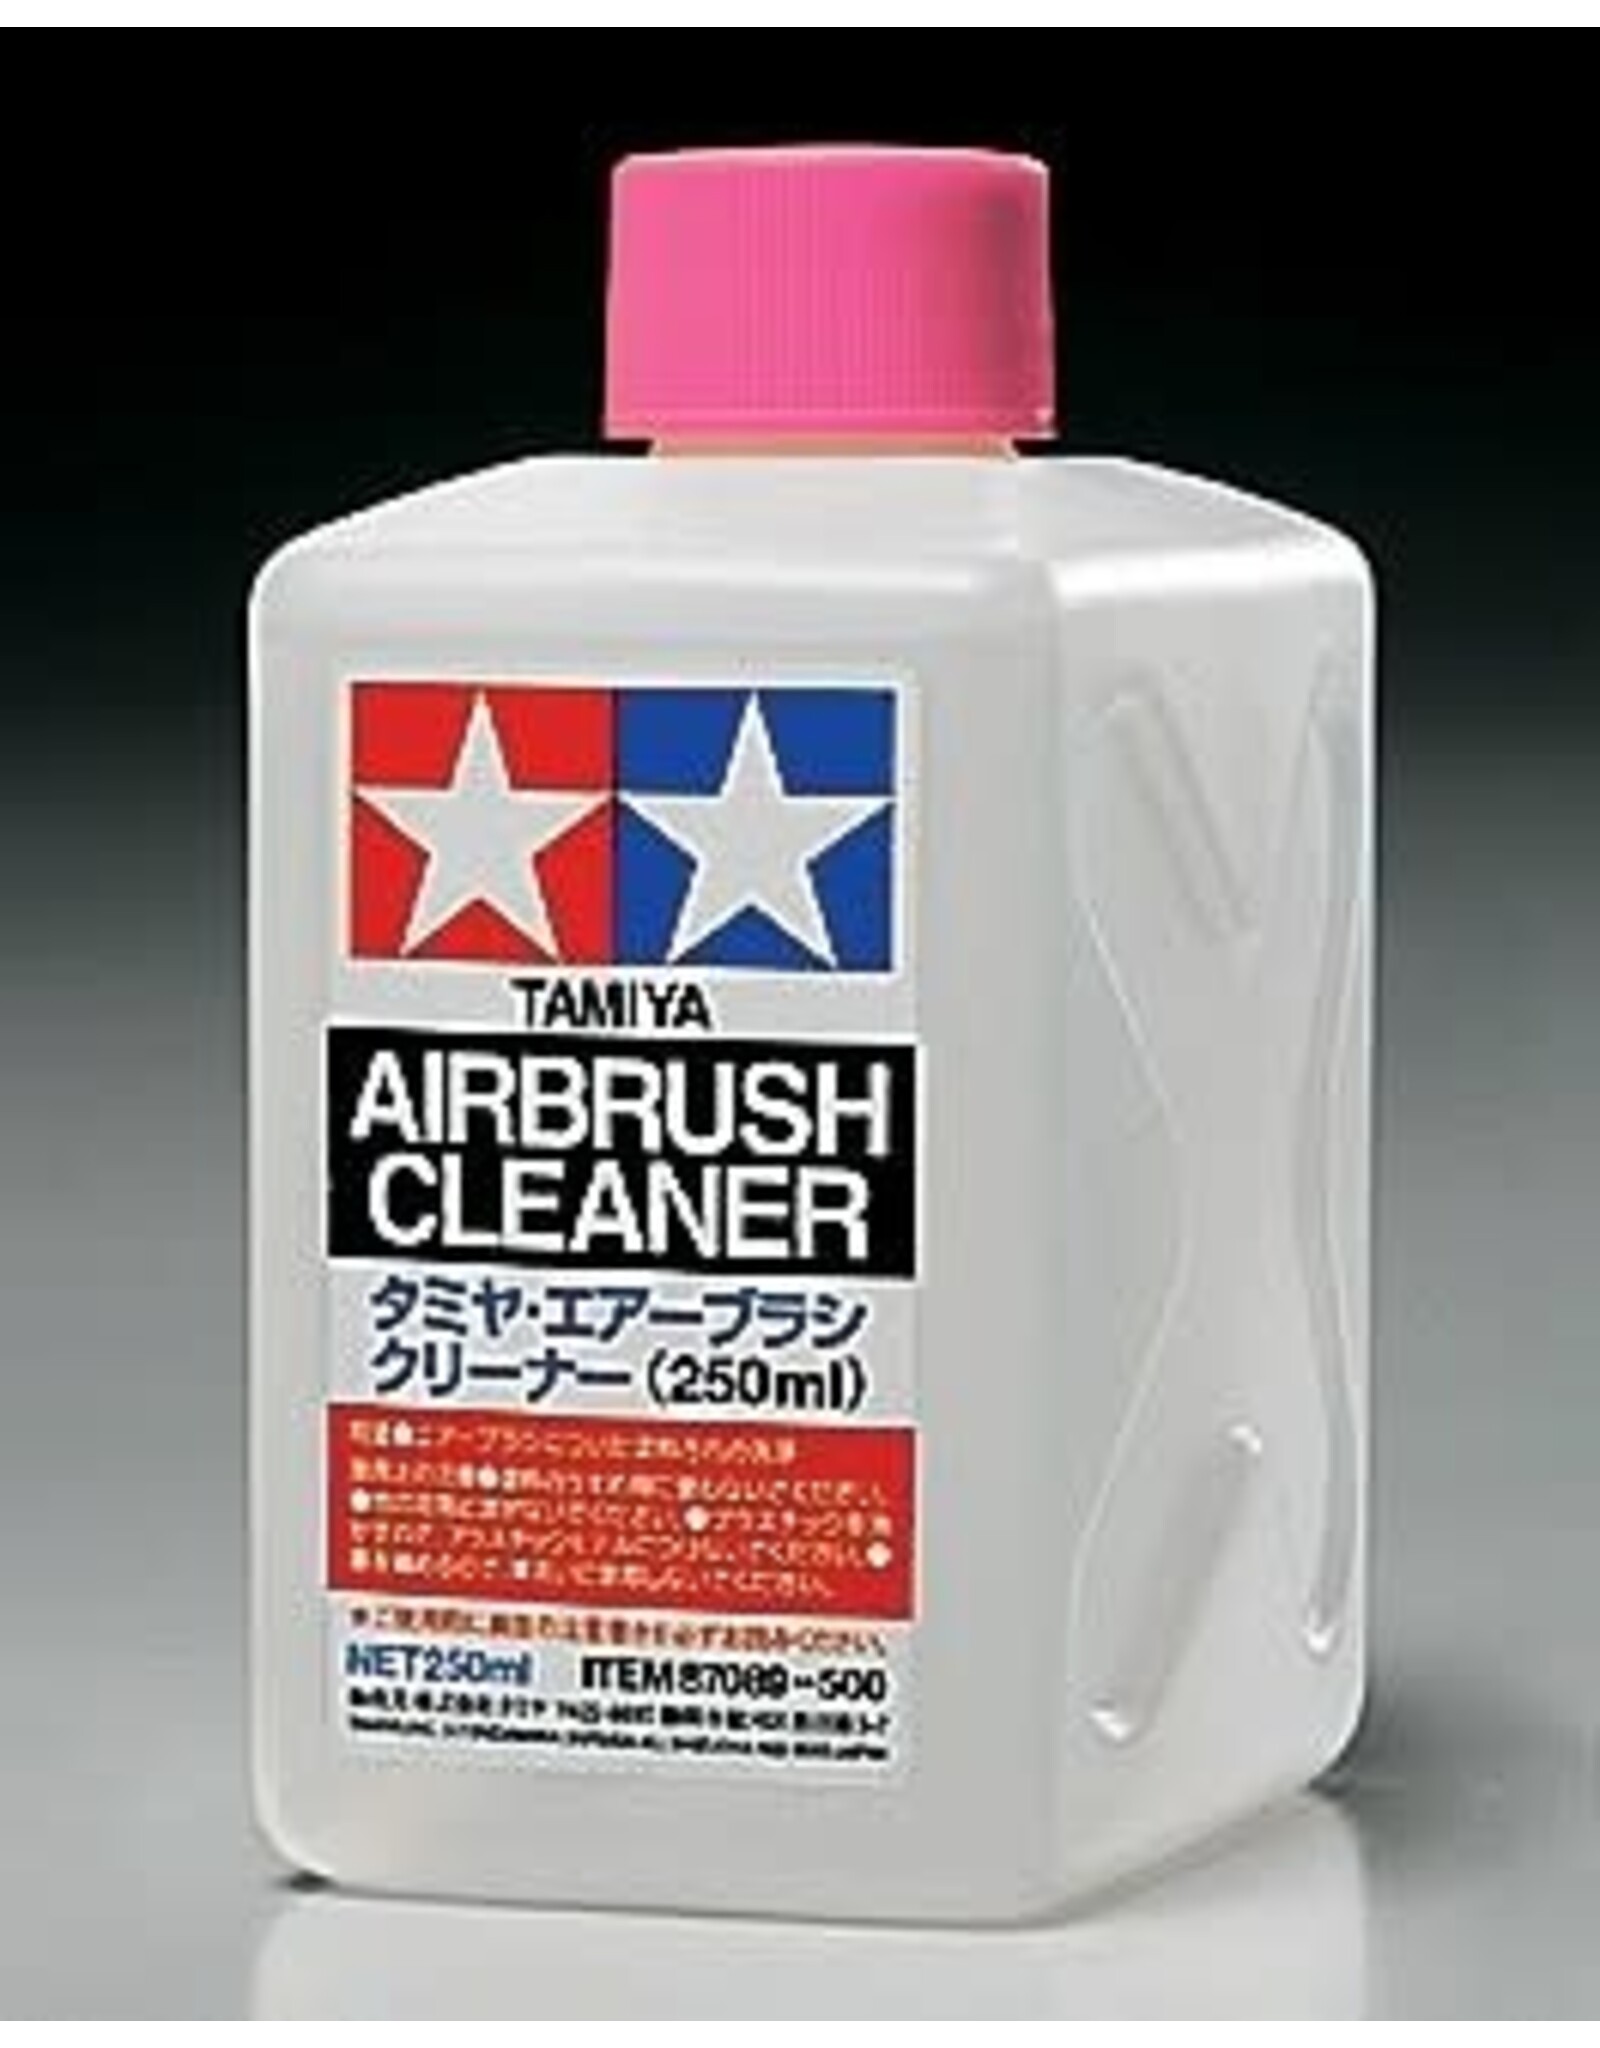 Tamiya 250ml Airbrush Cleaner